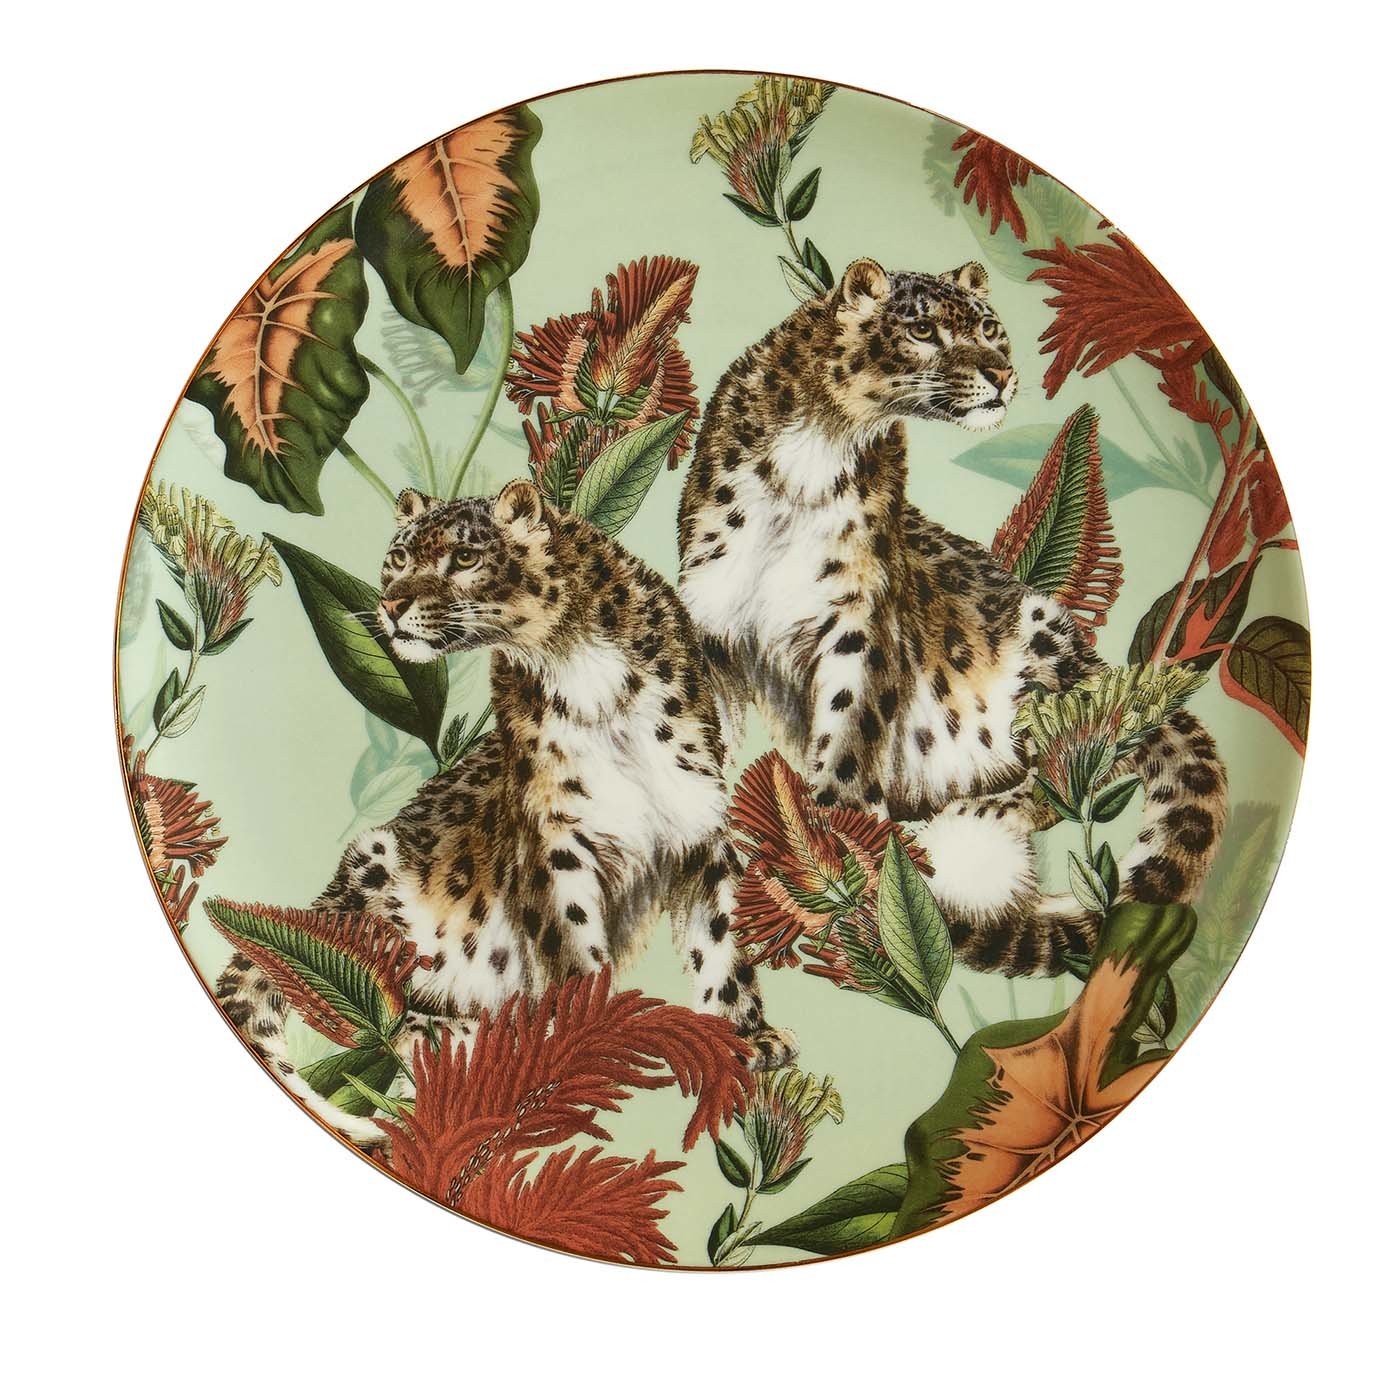 Animalia Porzellan Essteller mit Geparden und roten Blumen - Hauptansicht